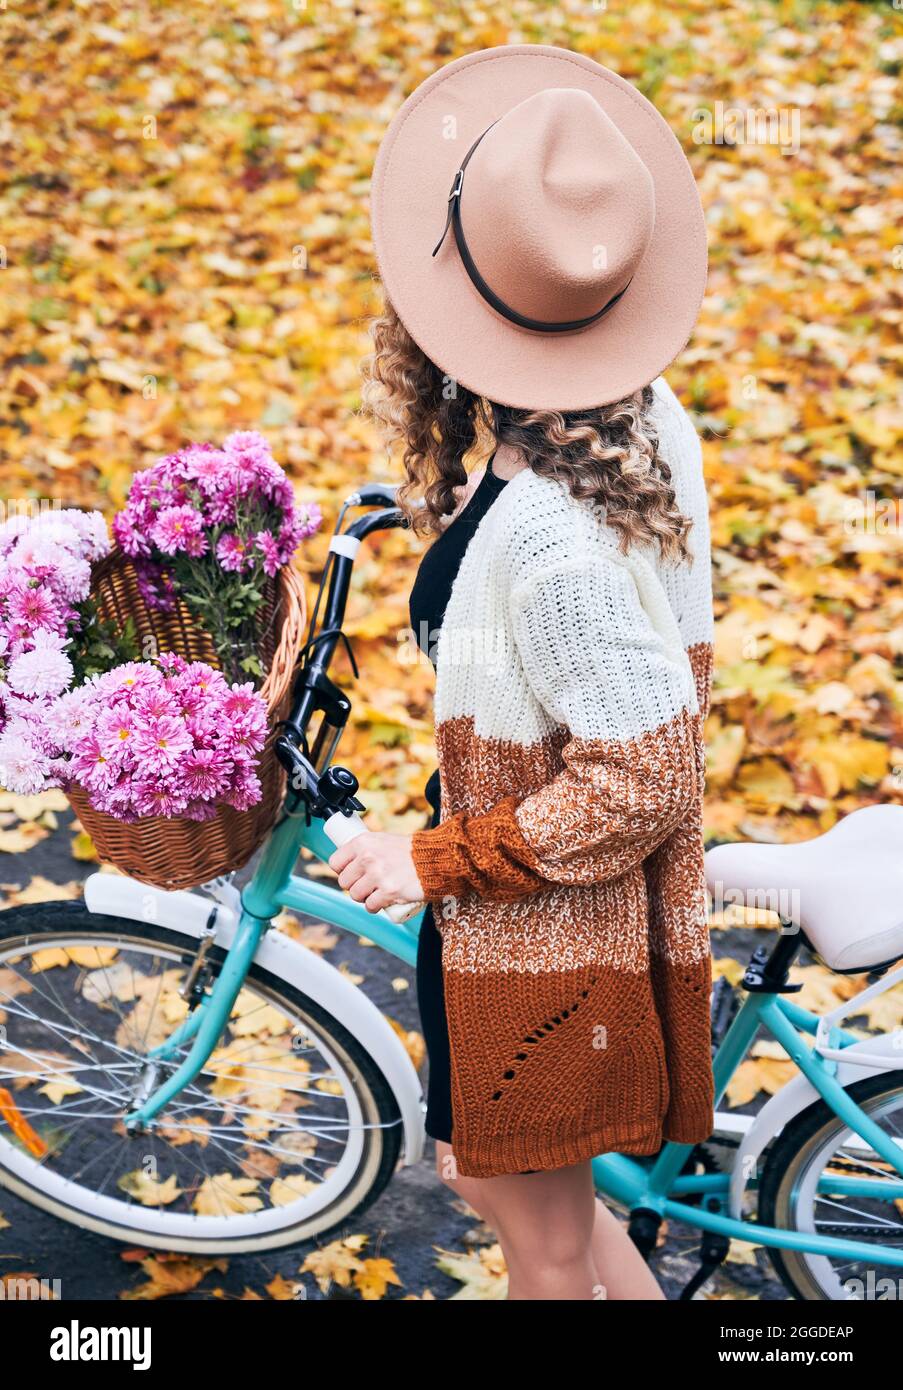 Au-dessus de la vue de la jeune femme avec les cheveux bouclés dans un chapeau beige debout avec vélo moderne bleu et bouquet de fleurs roses fraîches. Concept de marche à vélo dans le parc d'automne feuilles jaunes moyennes. Banque D'Images